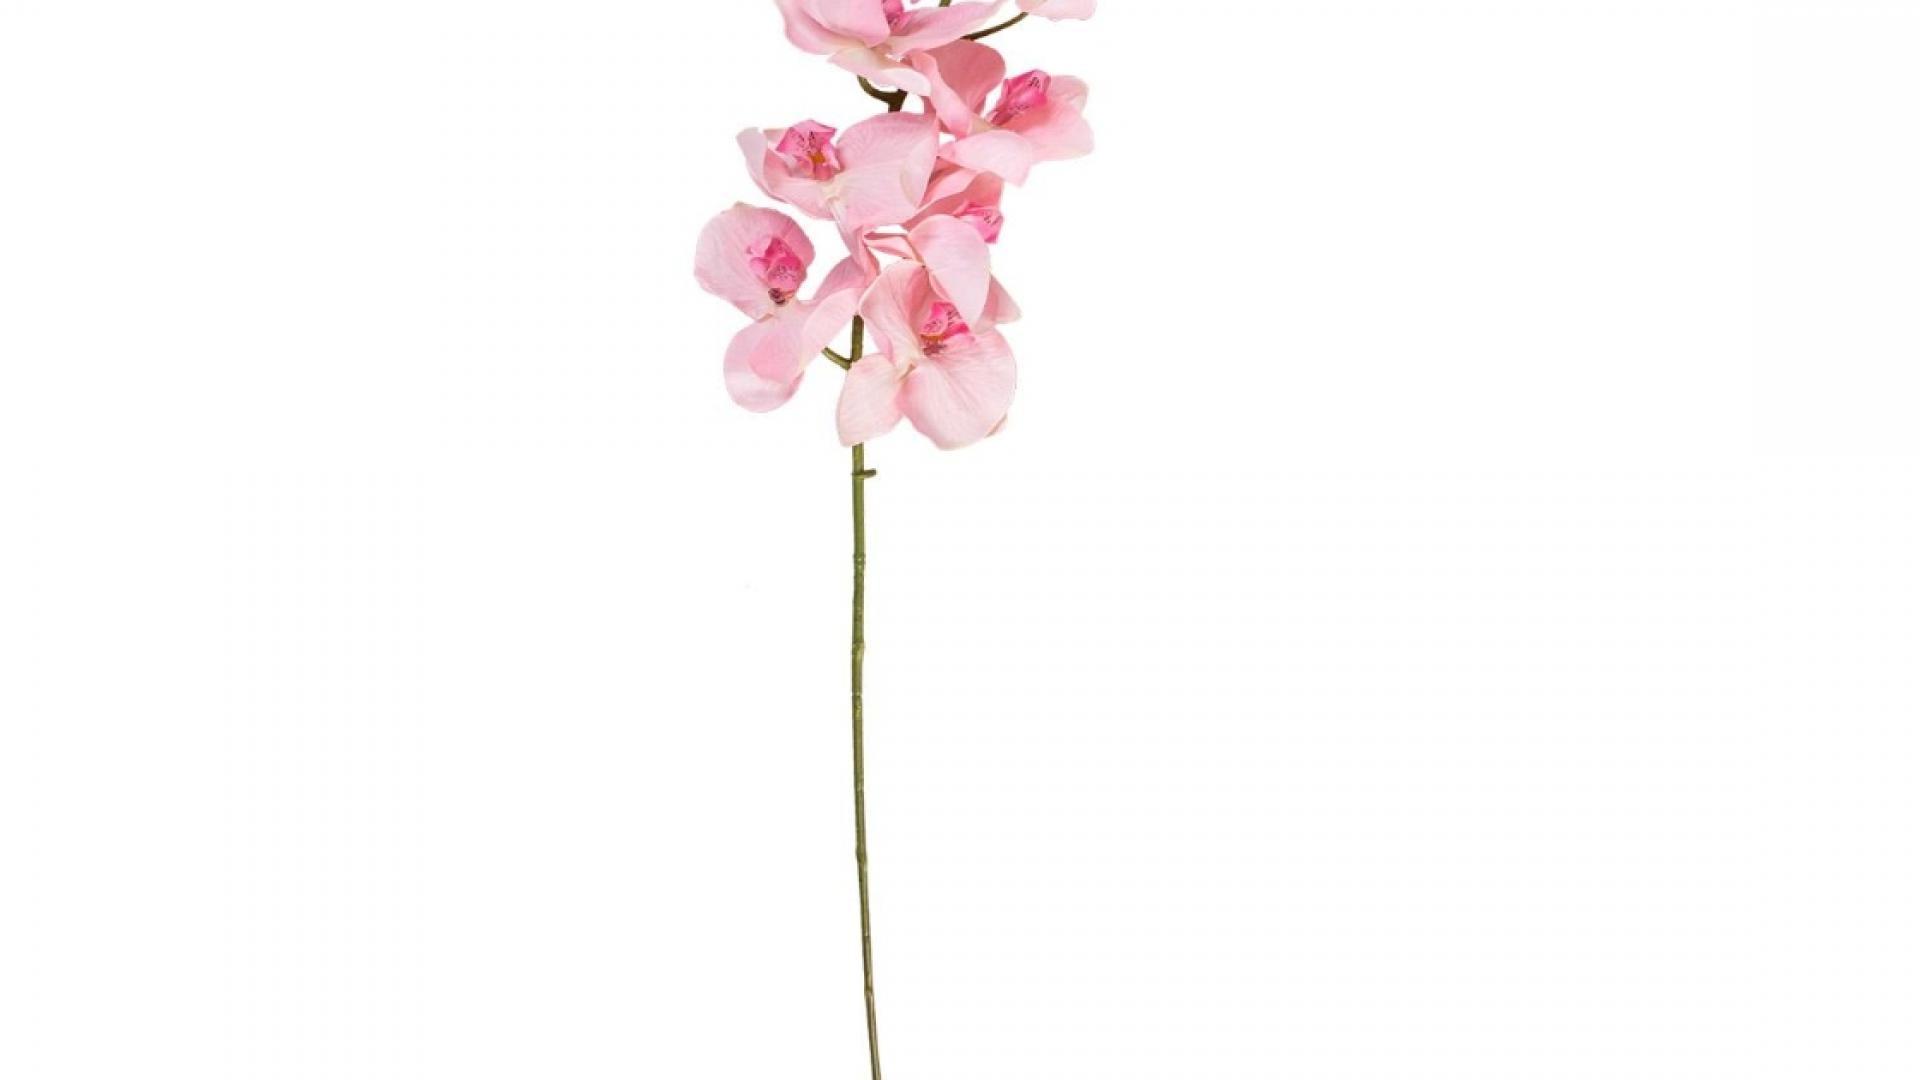 Орхидея Цикнохес 64См. Розовый